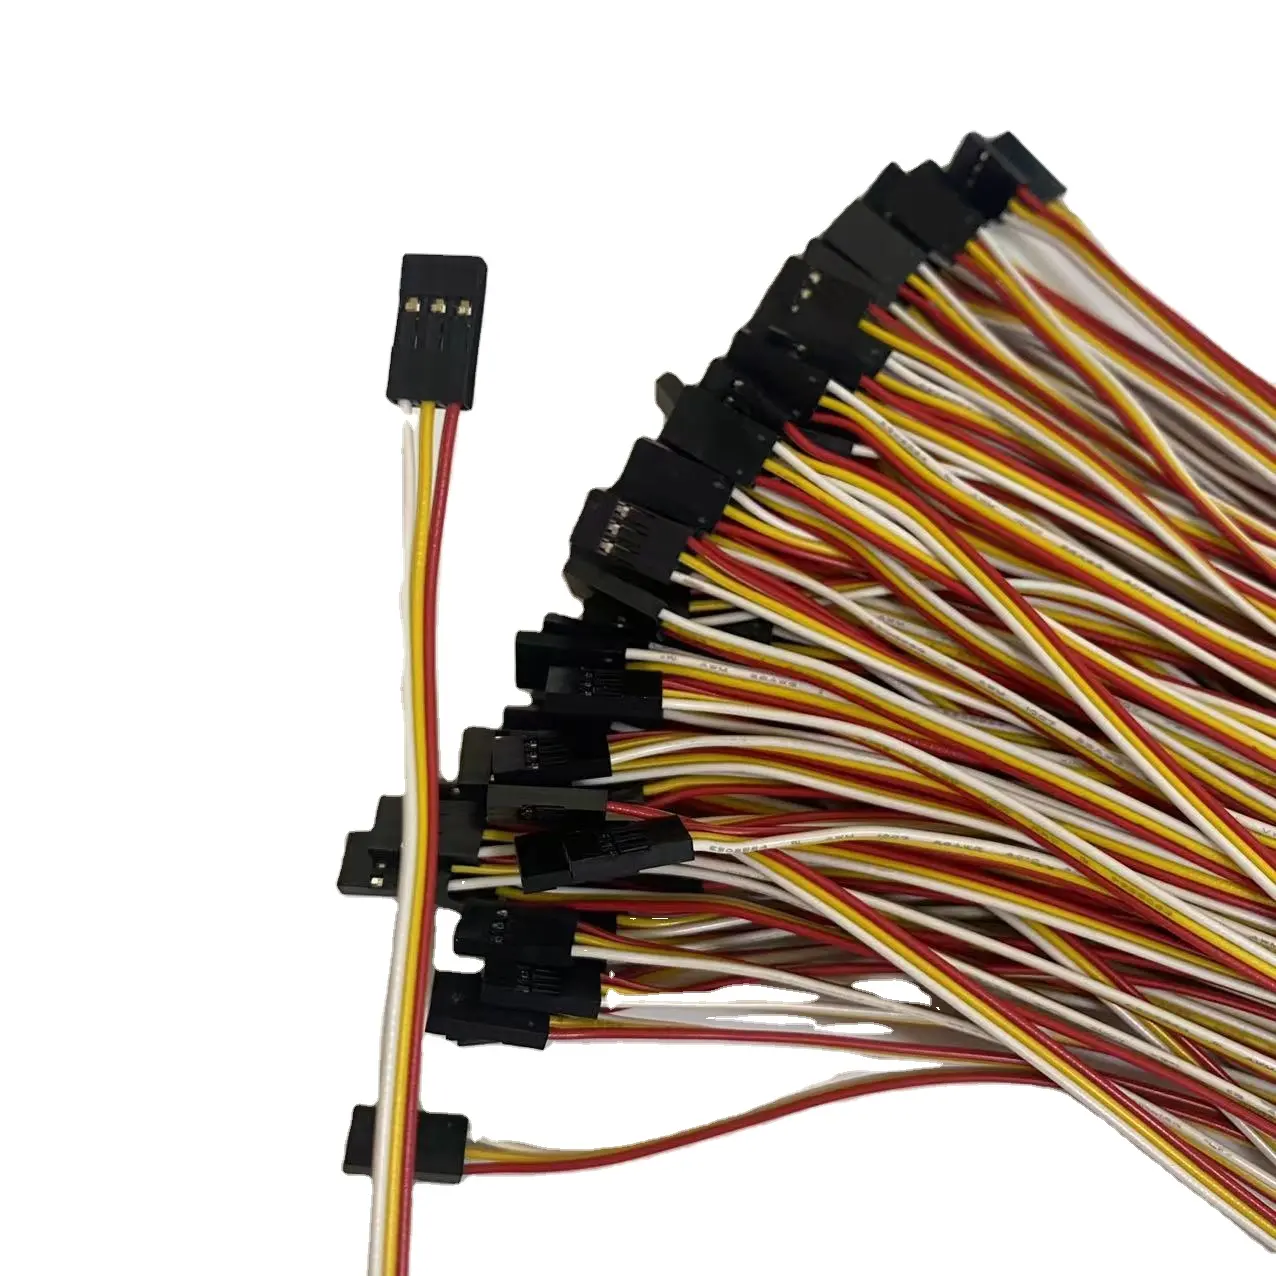 2PIN 2-poliges Überbrückung kabel 24AWG 2 P Dupont-Kabel für 3D-Drucker 10CM/20CM/30CM Länge